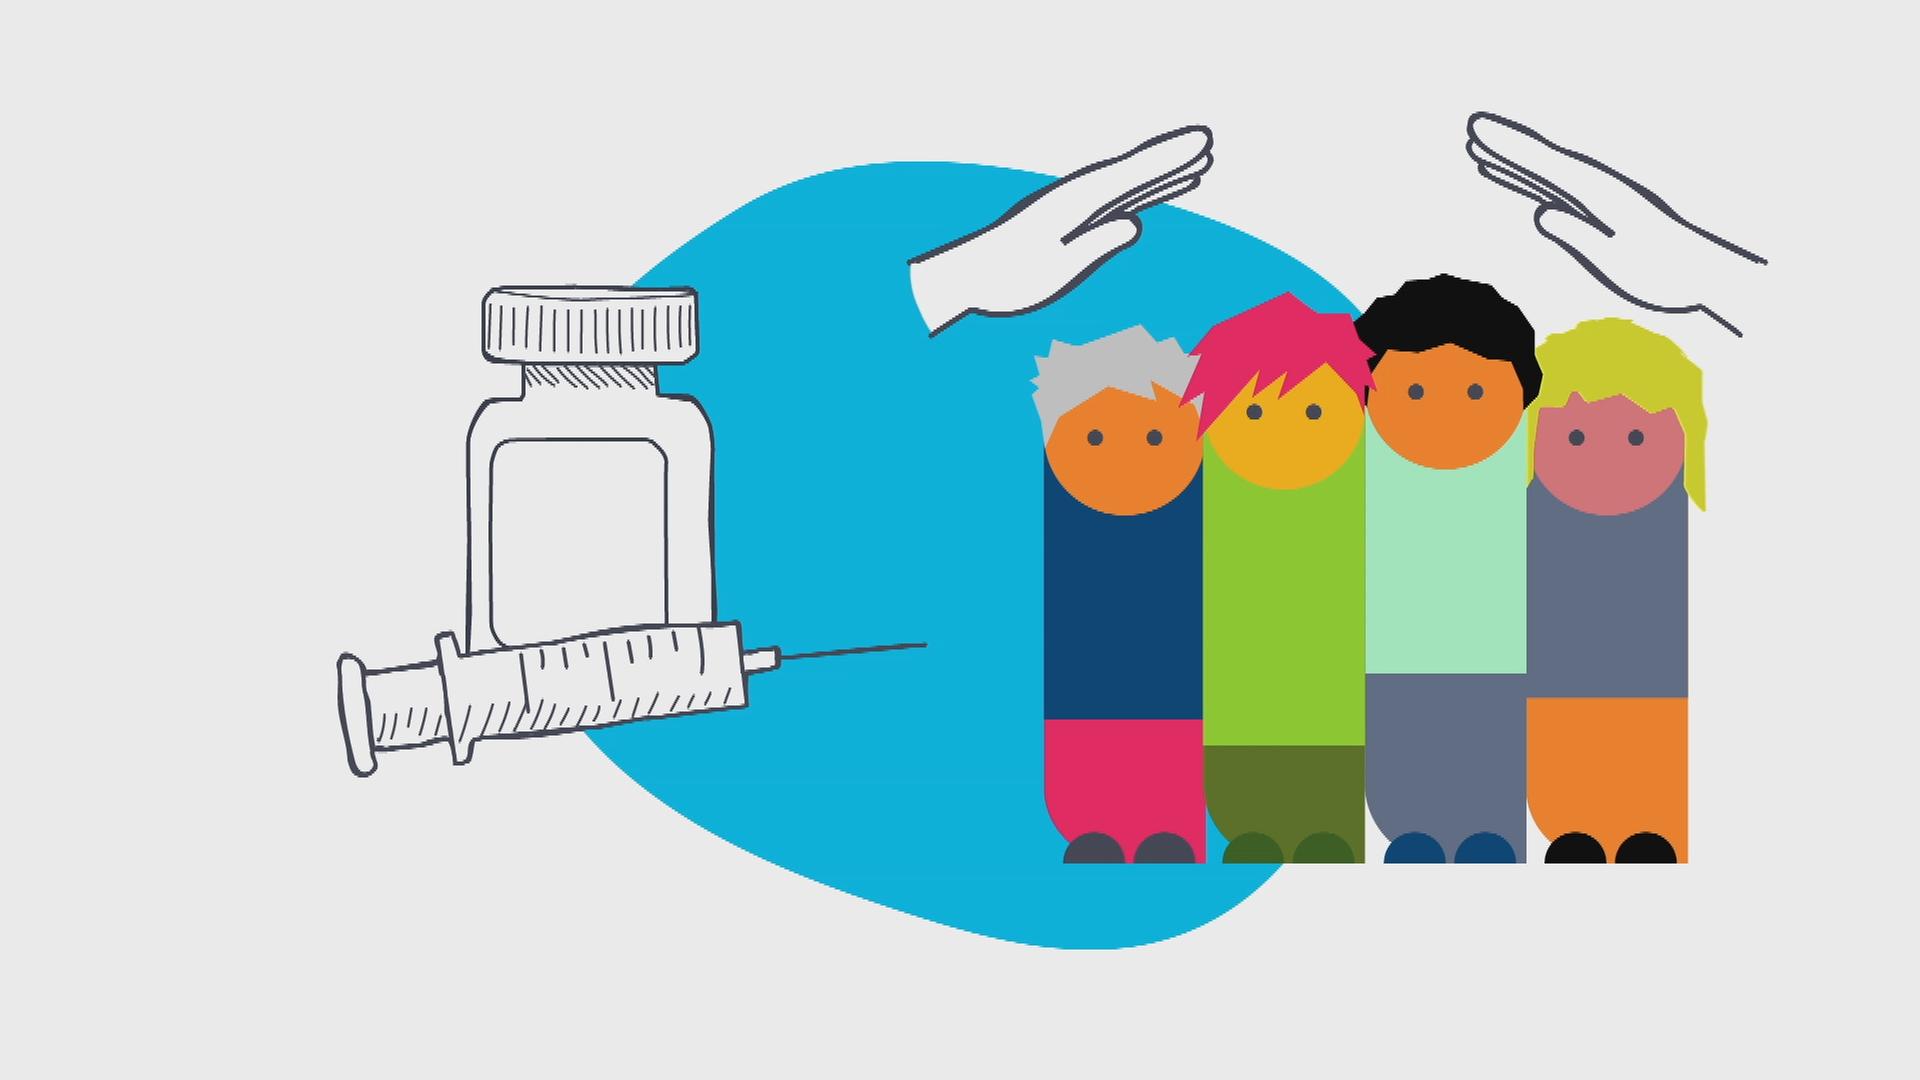 logo! erklärt: Warum Impfen wichtig ist